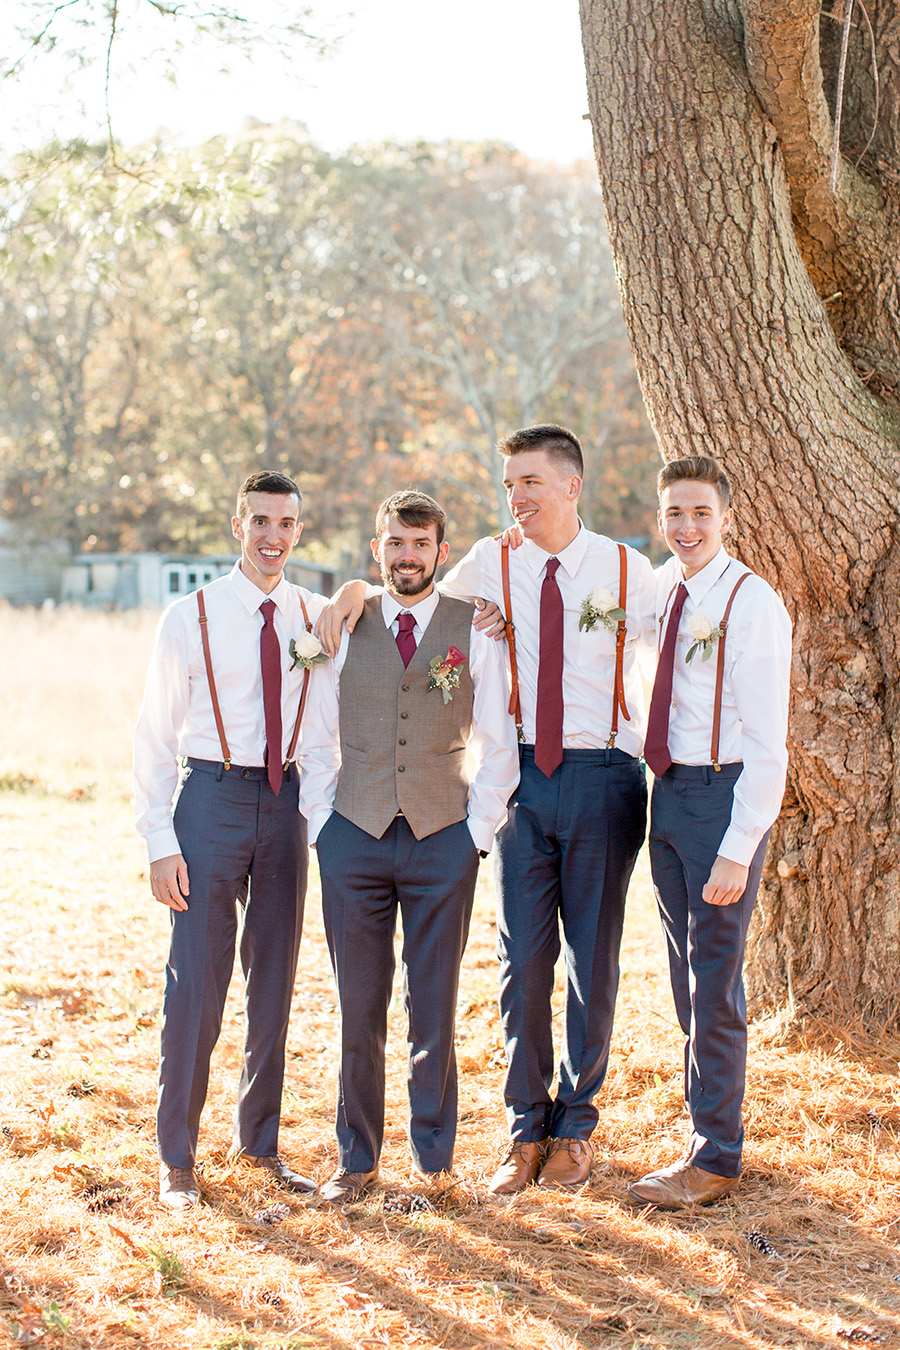 groom with his groomsmen in suspenders and navy pants